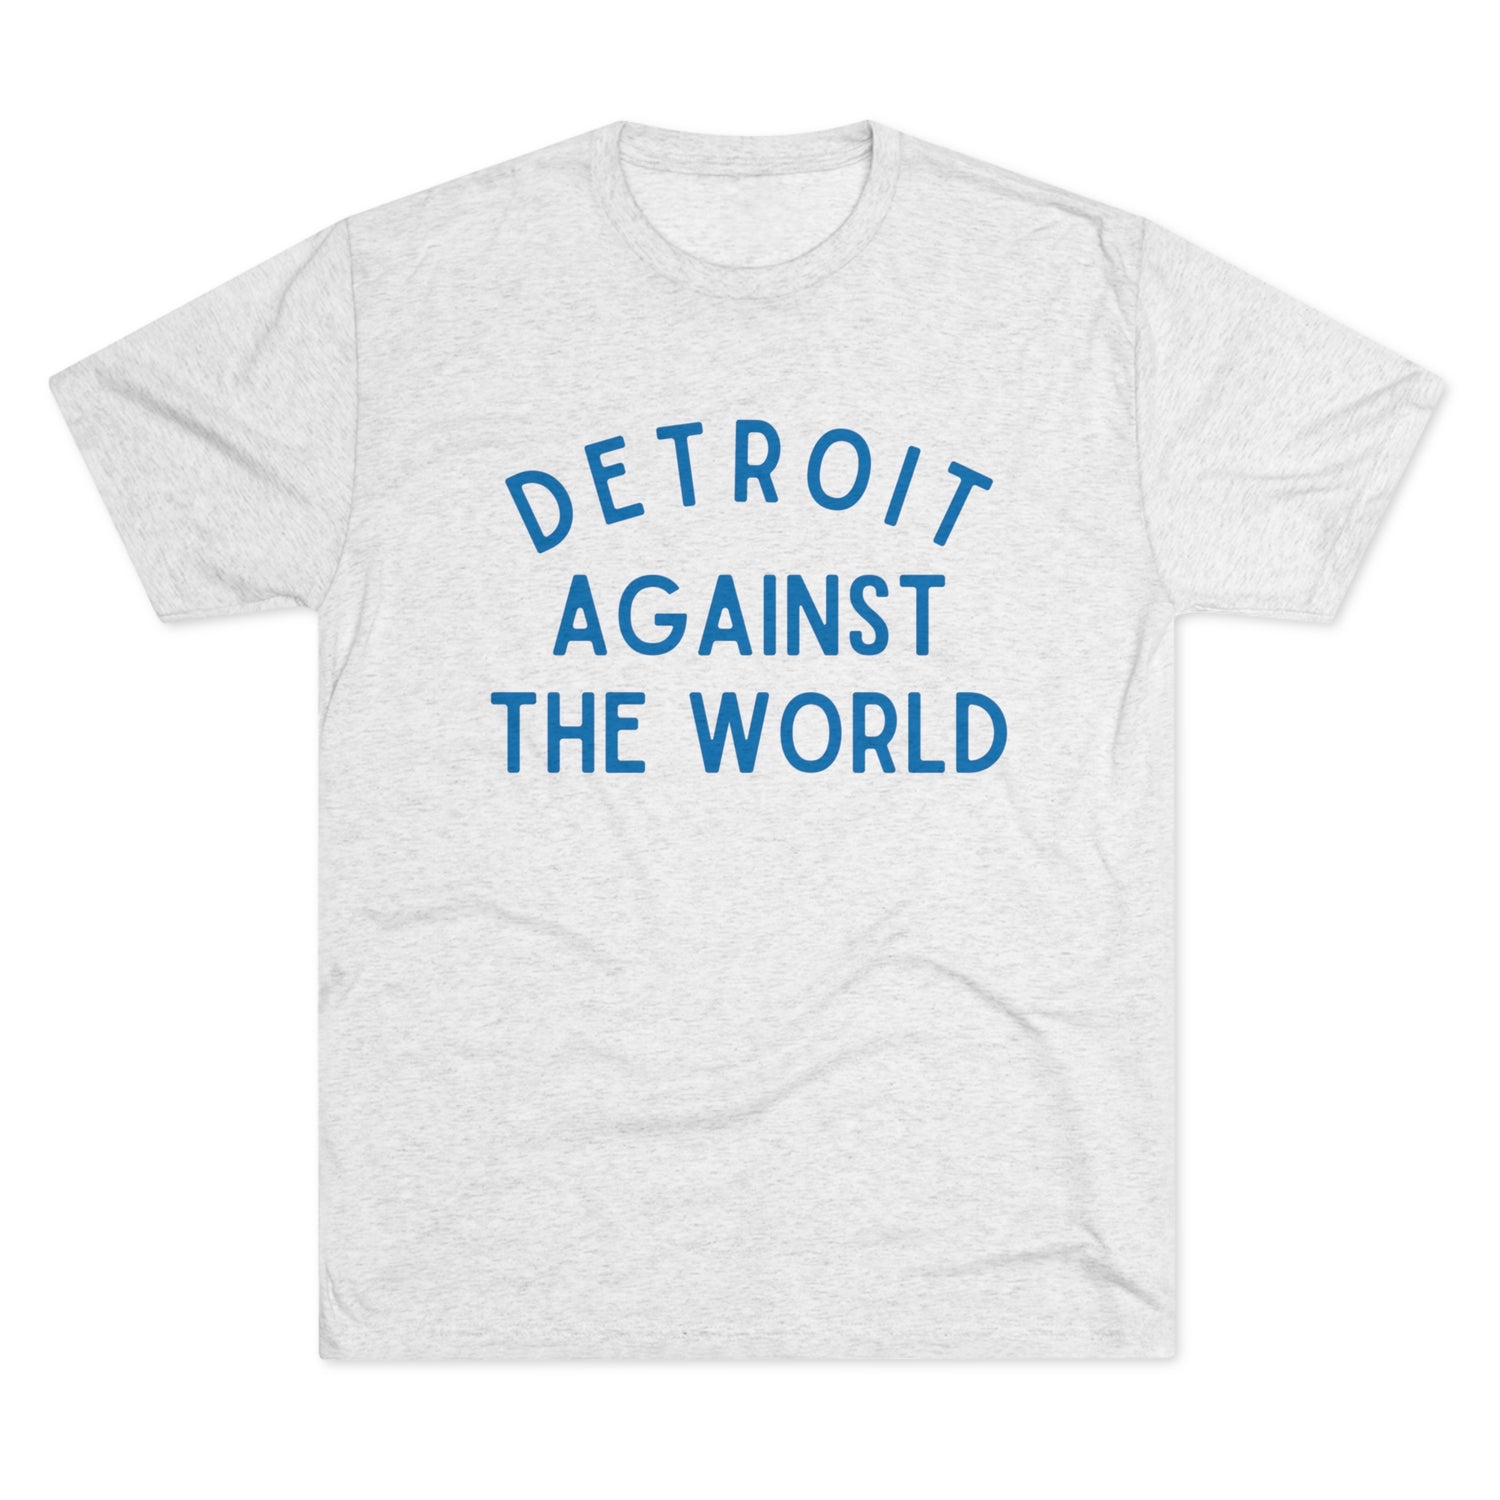 Detroit Against the World